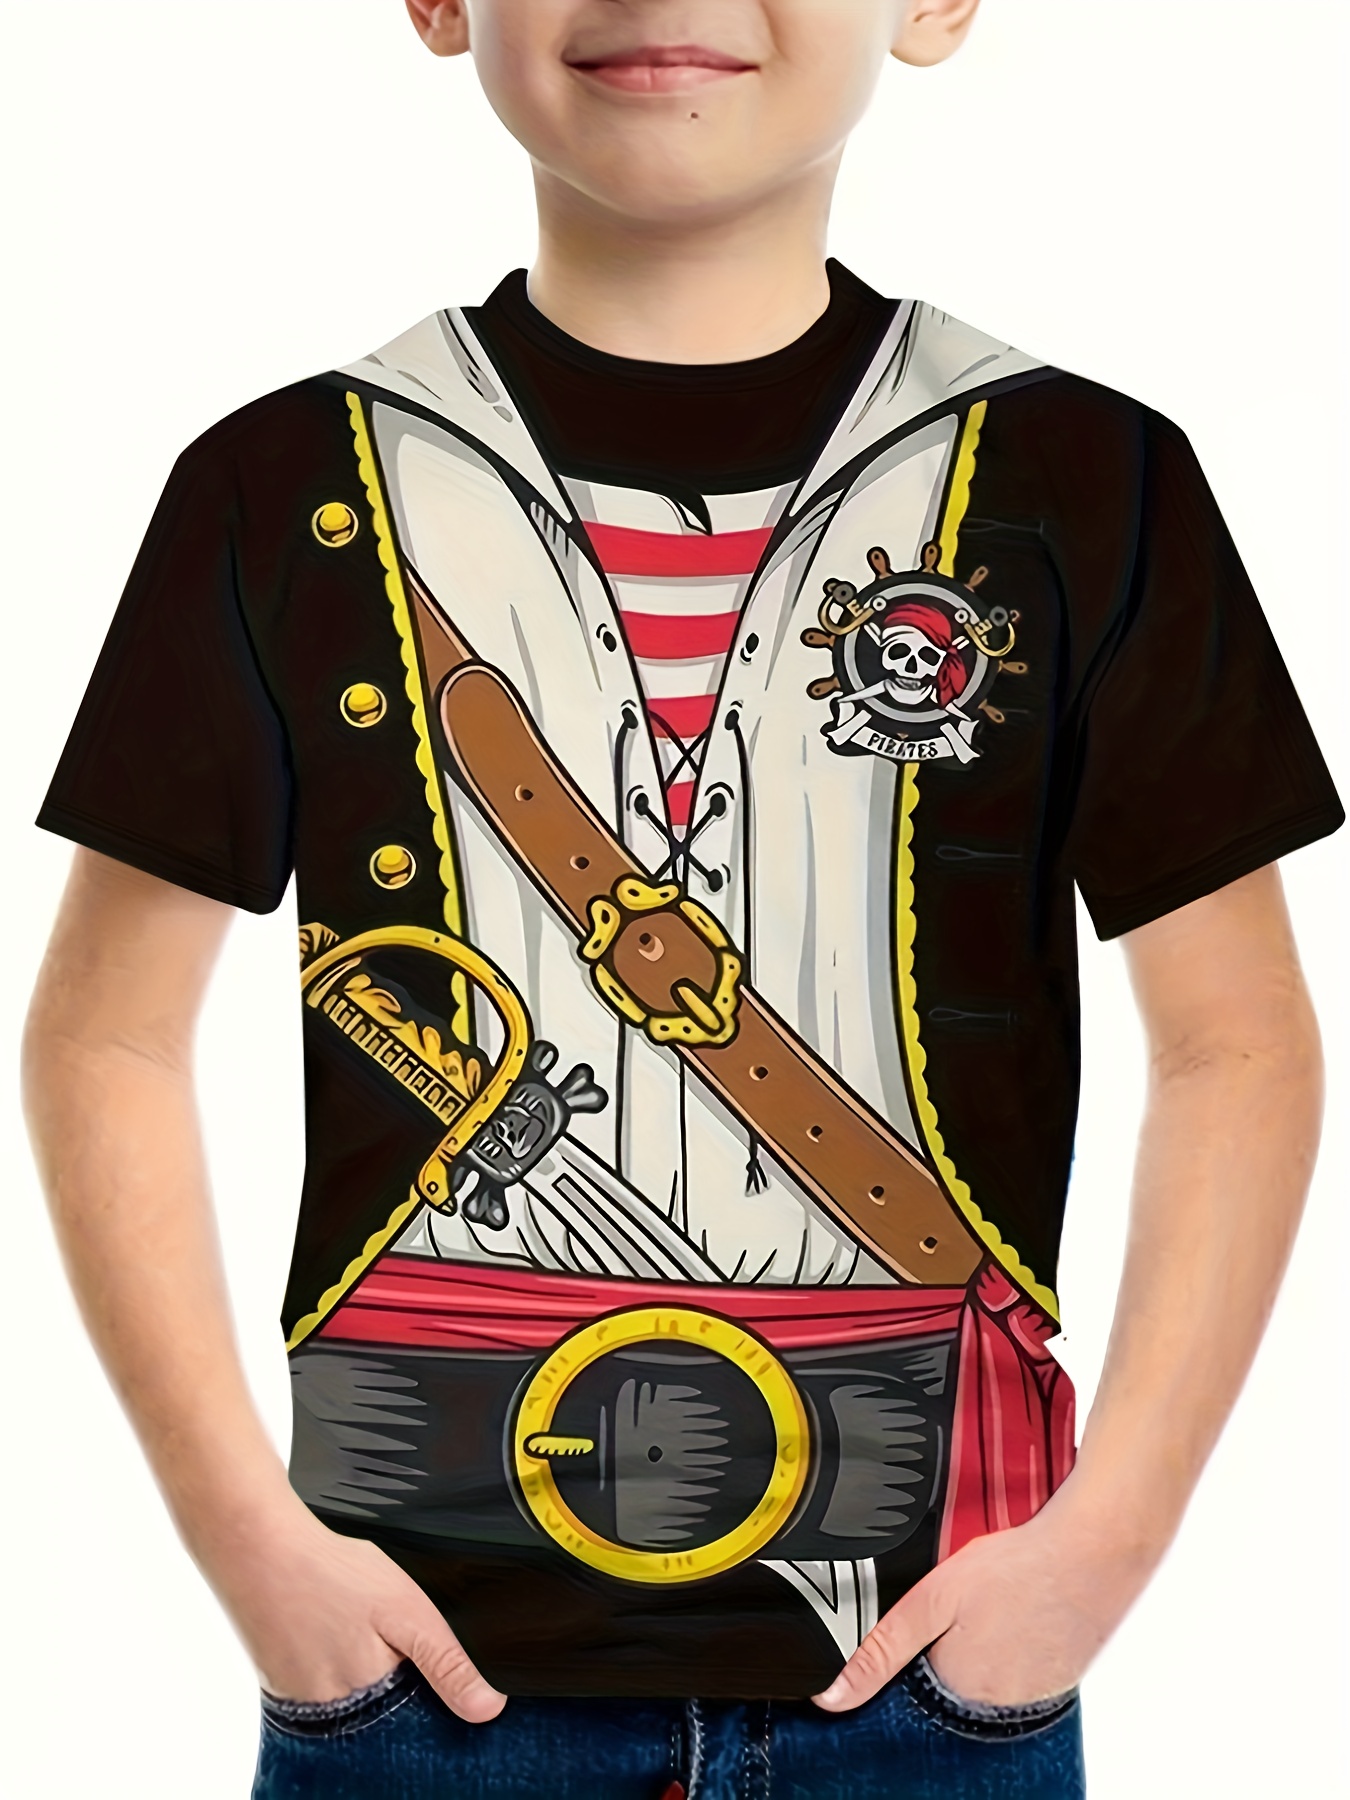 6 piezas de accesorios piratas incluyen parches de ojo pirata, loro pirata,  accesorio de hombro, bandana pirata roja y negra para niños y niñas